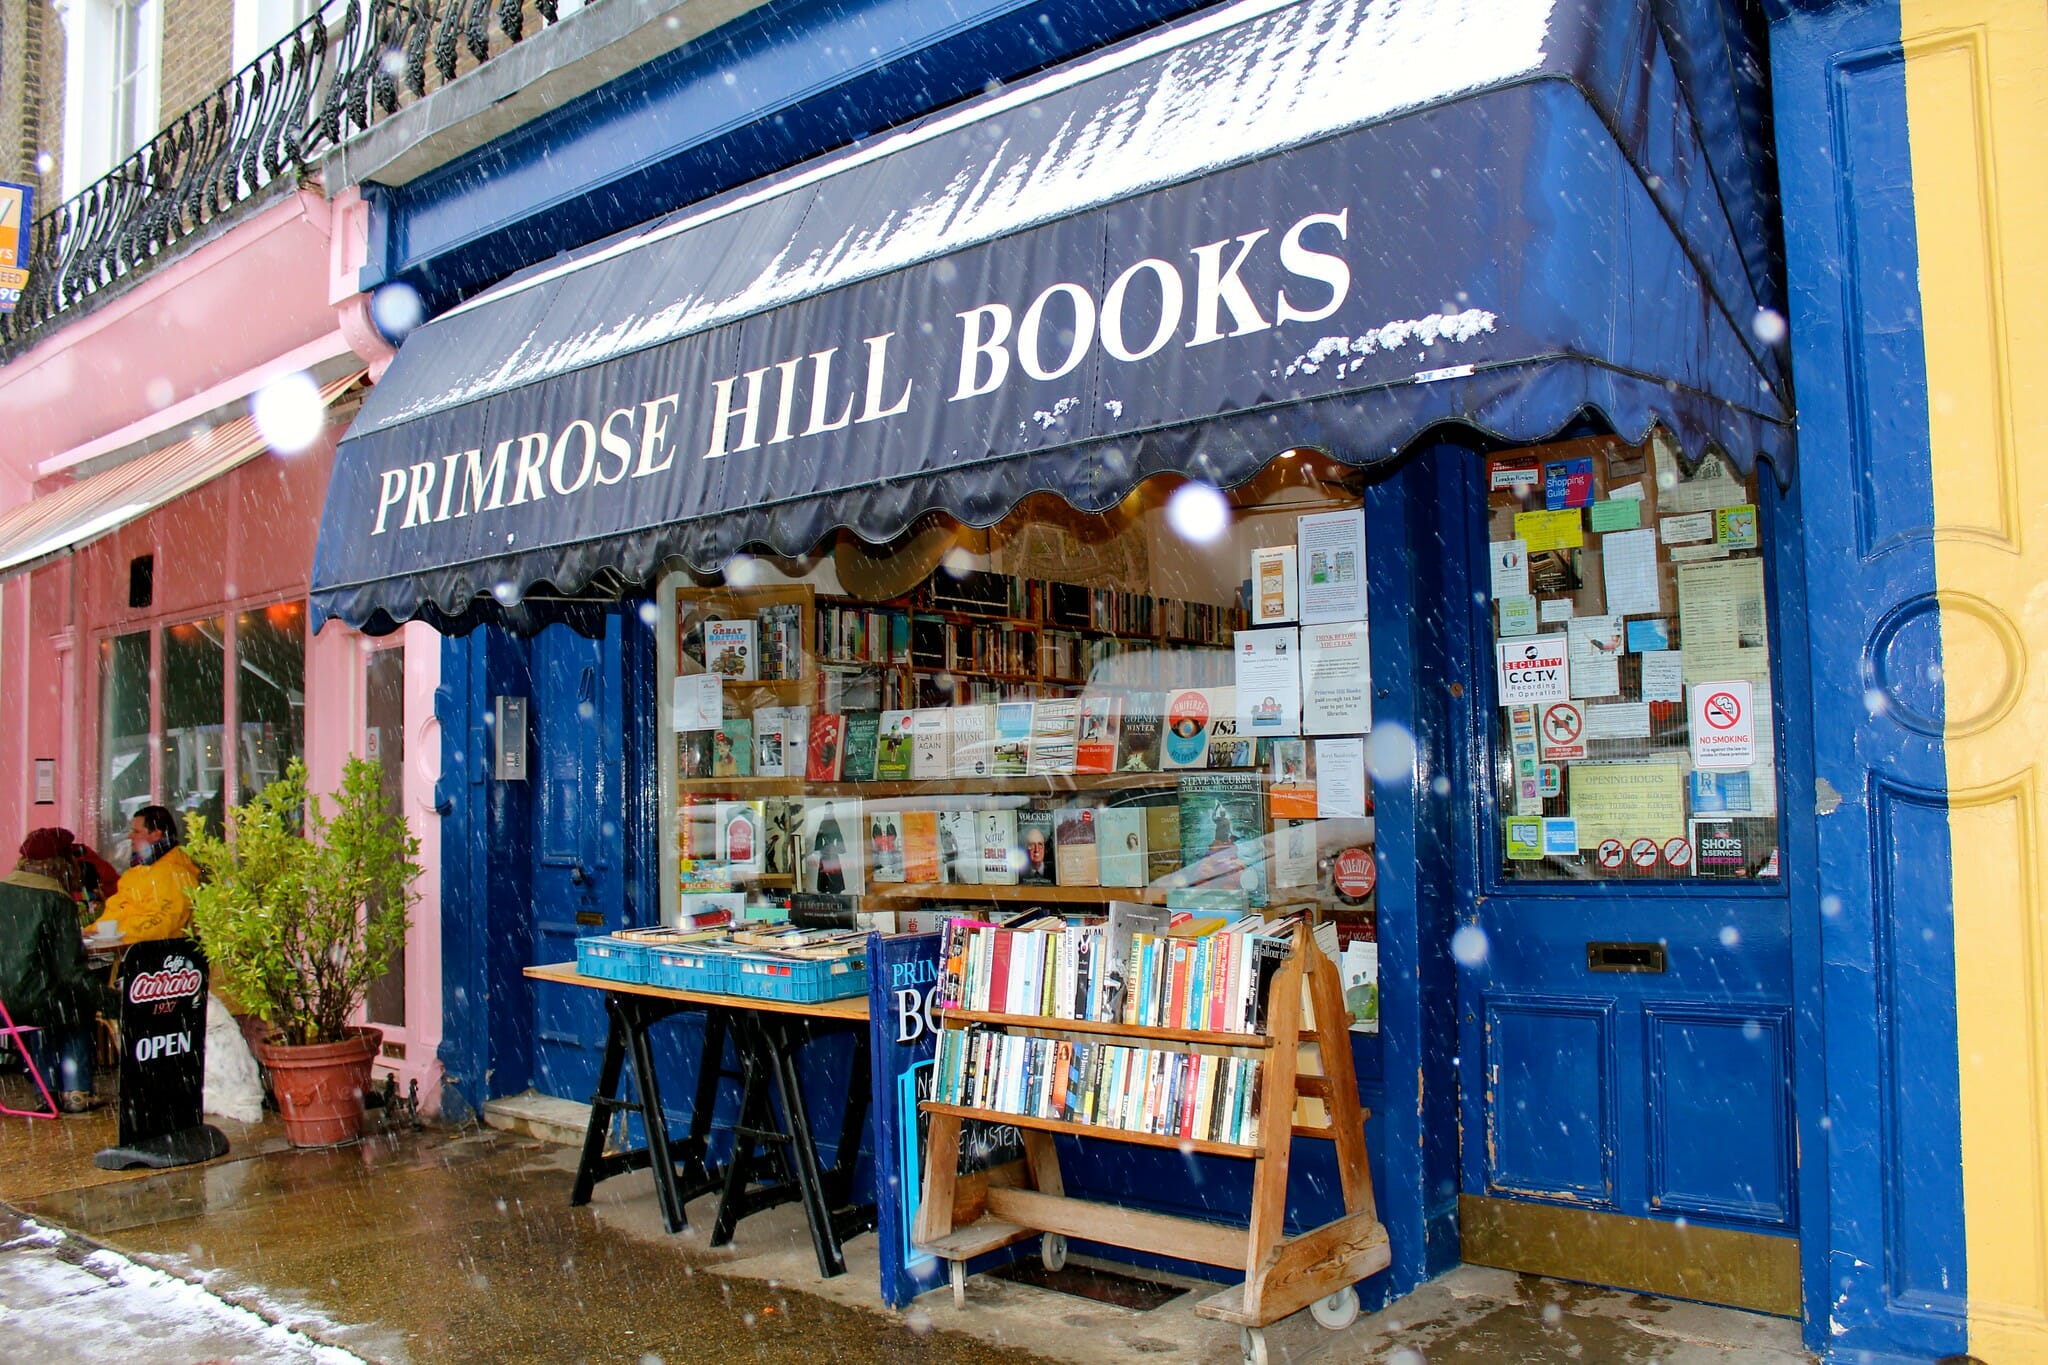 Primrose Hill Books delivery